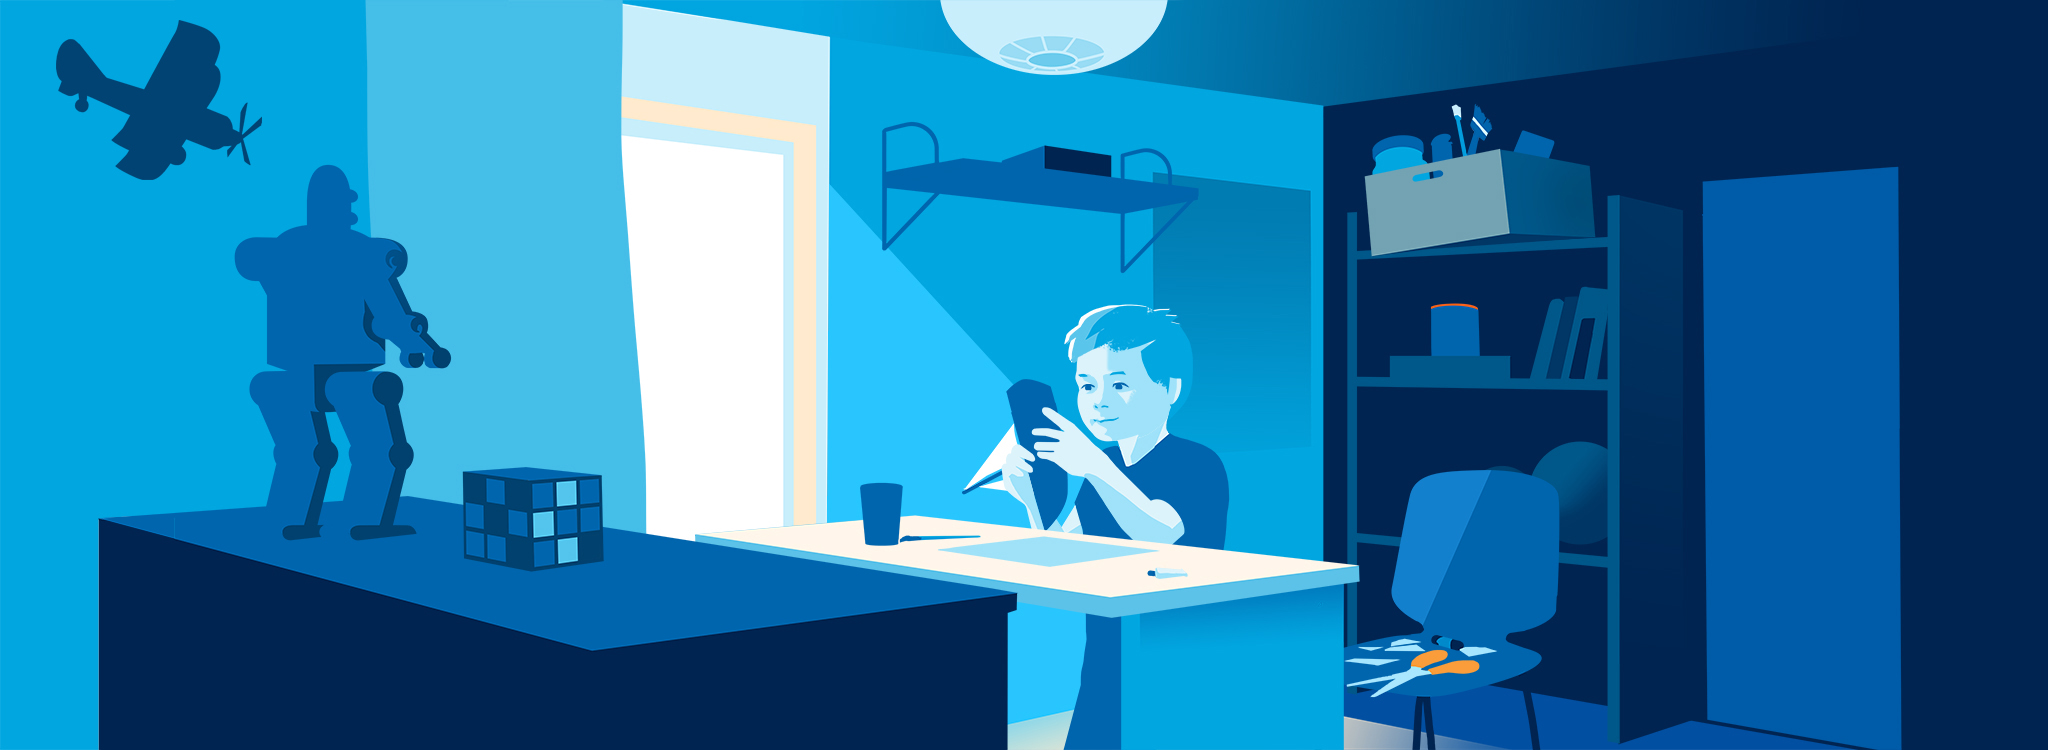 Grafik in Blautönen, die einen kleinen Jungen beim Basteln am Schreibtisch in seinem Kinderzimmer zeigt.